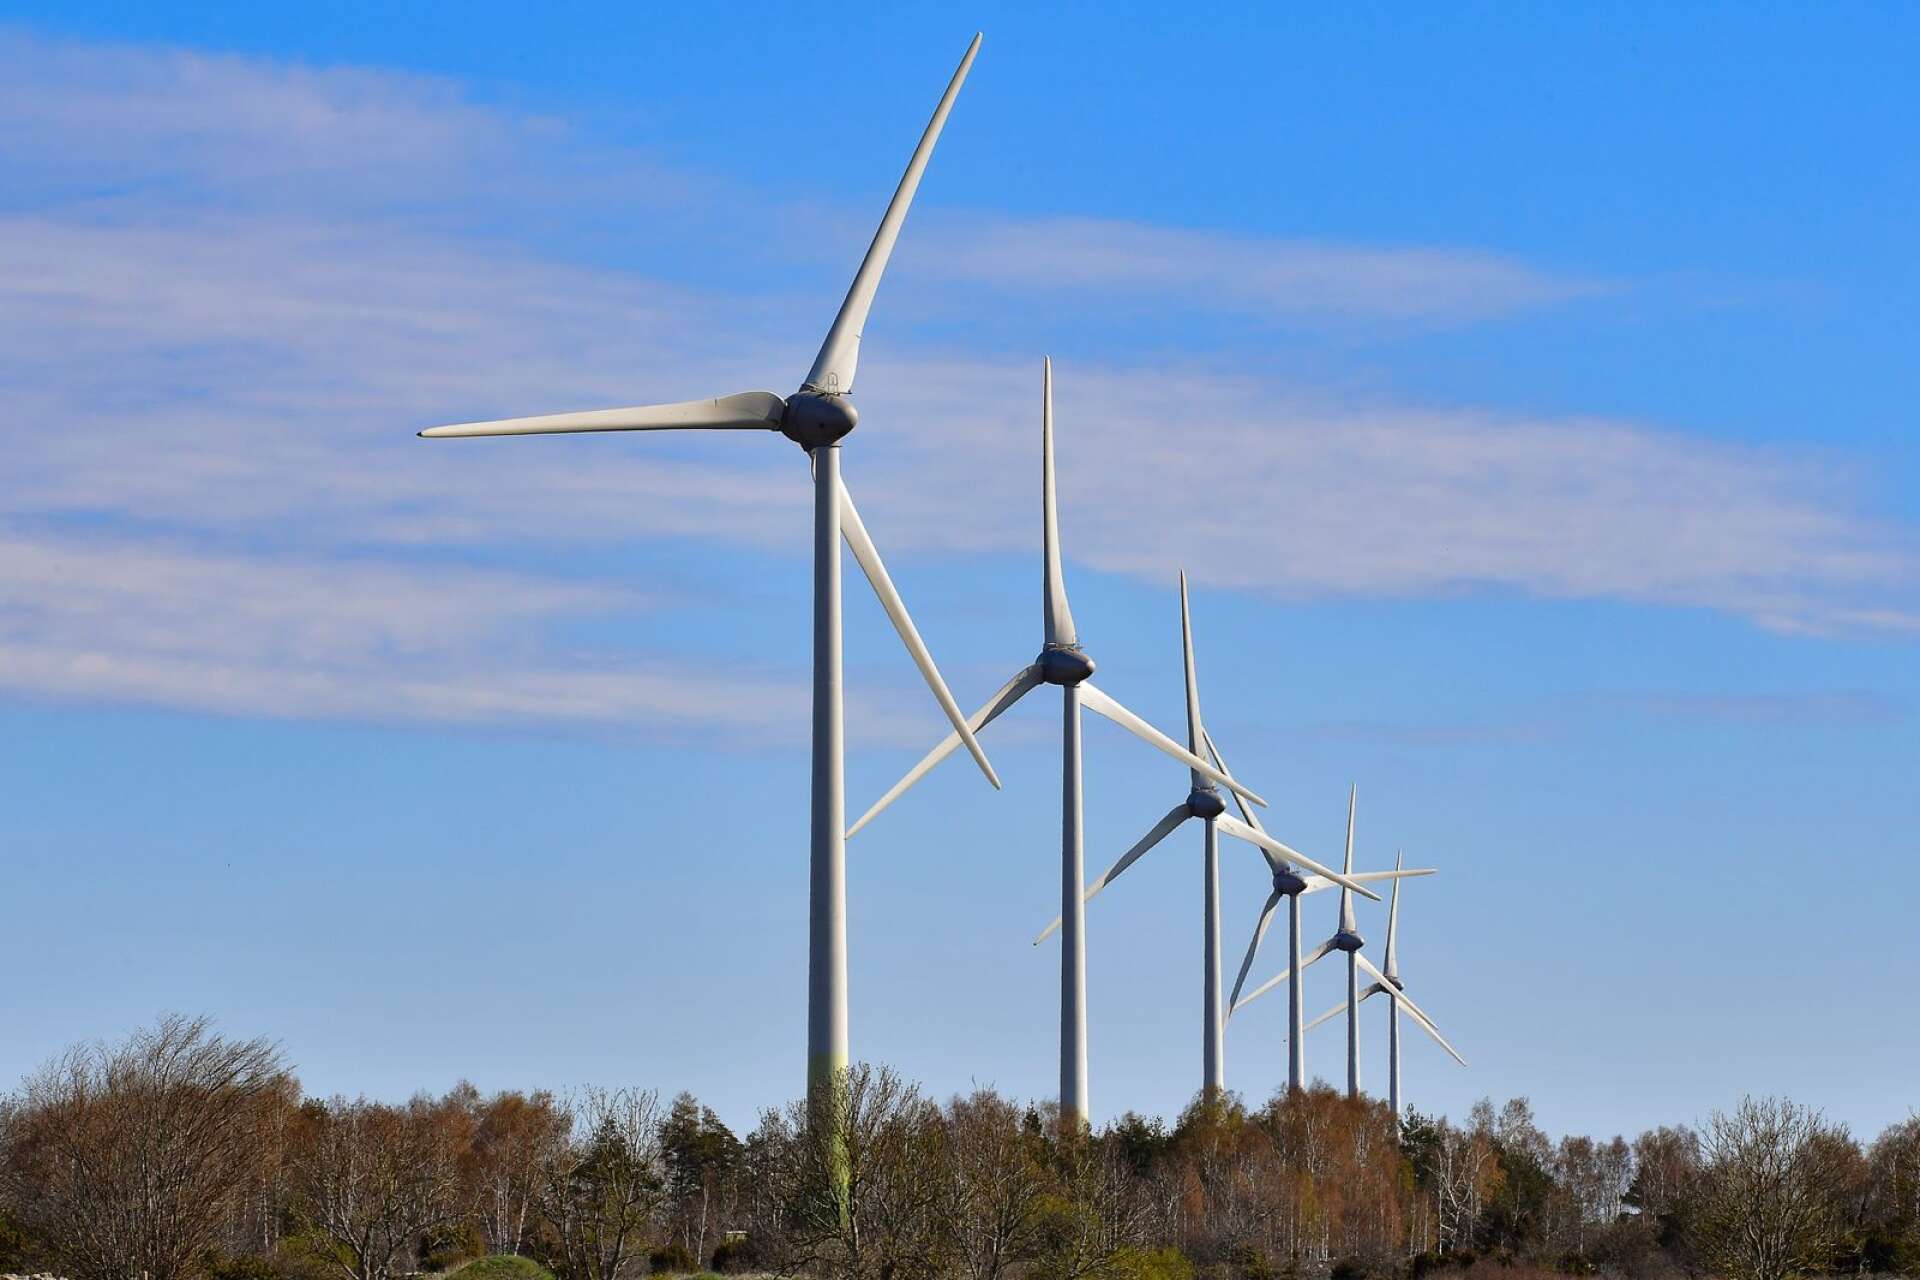 ”Som alla energislag påverkar även vindkraft miljön. Men det är vilseledande att ge intrycket att byggandet av vindkraftverk kräver kalhyggen”.